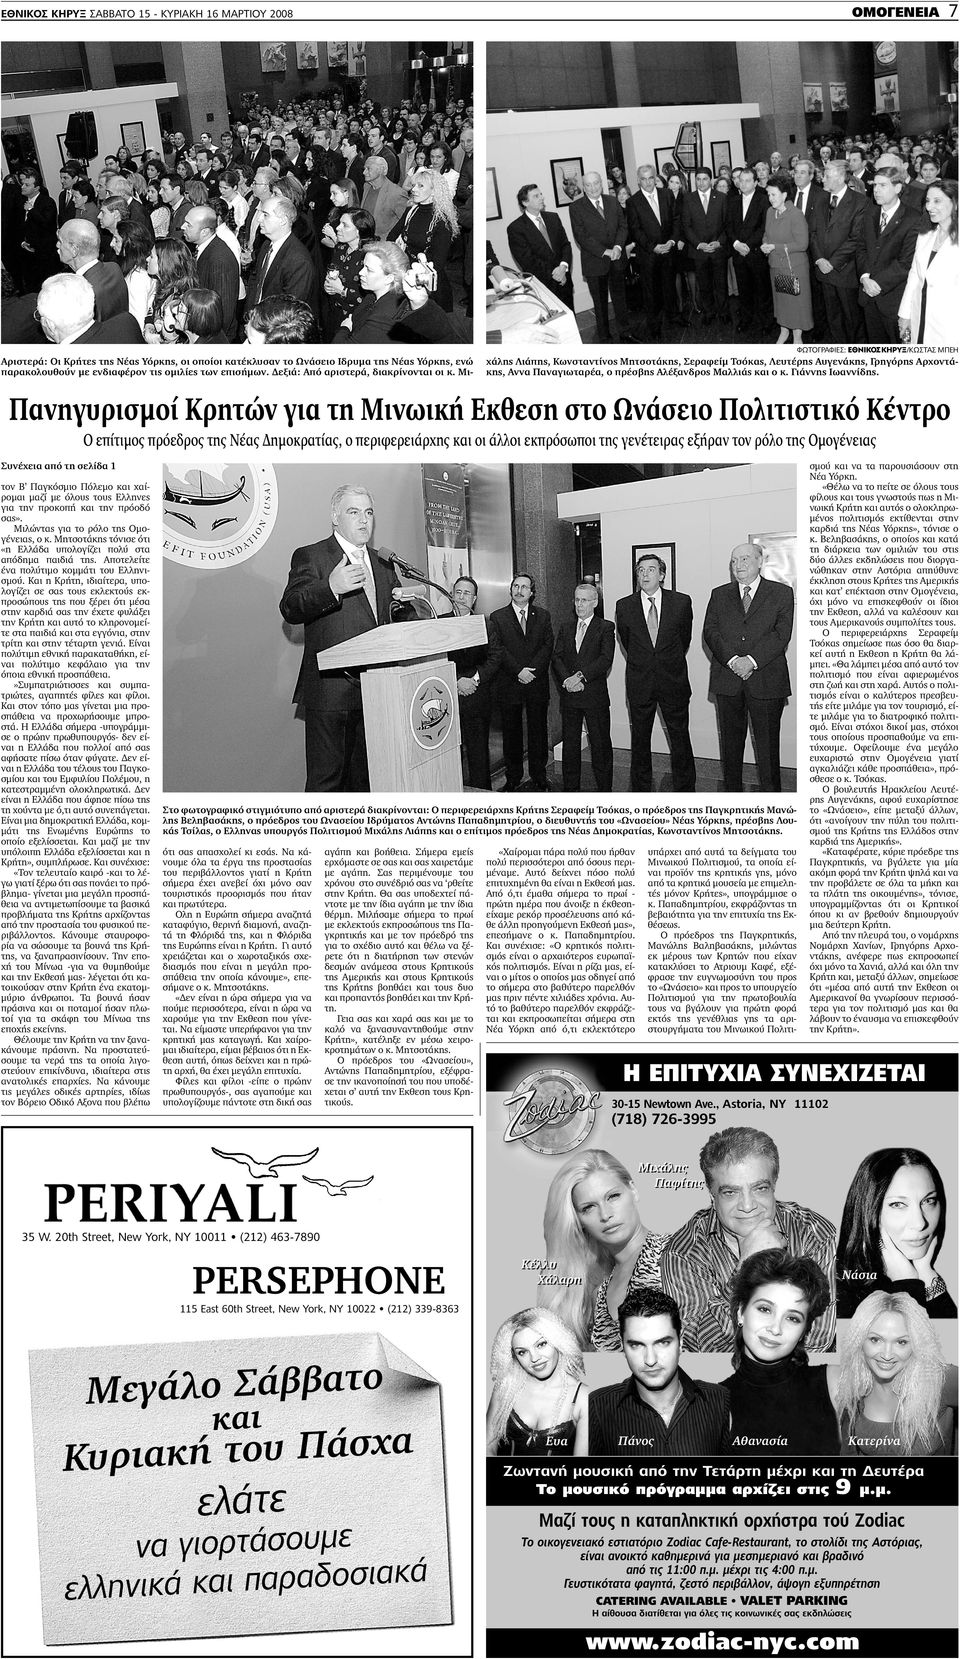 Μιλώντας για το ρόλο της Οµογένειας, ο κ. Μητσοτάκης τόνισε ότι «η Ελλάδα υπολογίζει πολύ στα απόδηµα παιδιά της. Αποτελείτε ένα πολύτιµο κοµµάτι του Ελληνισµού.